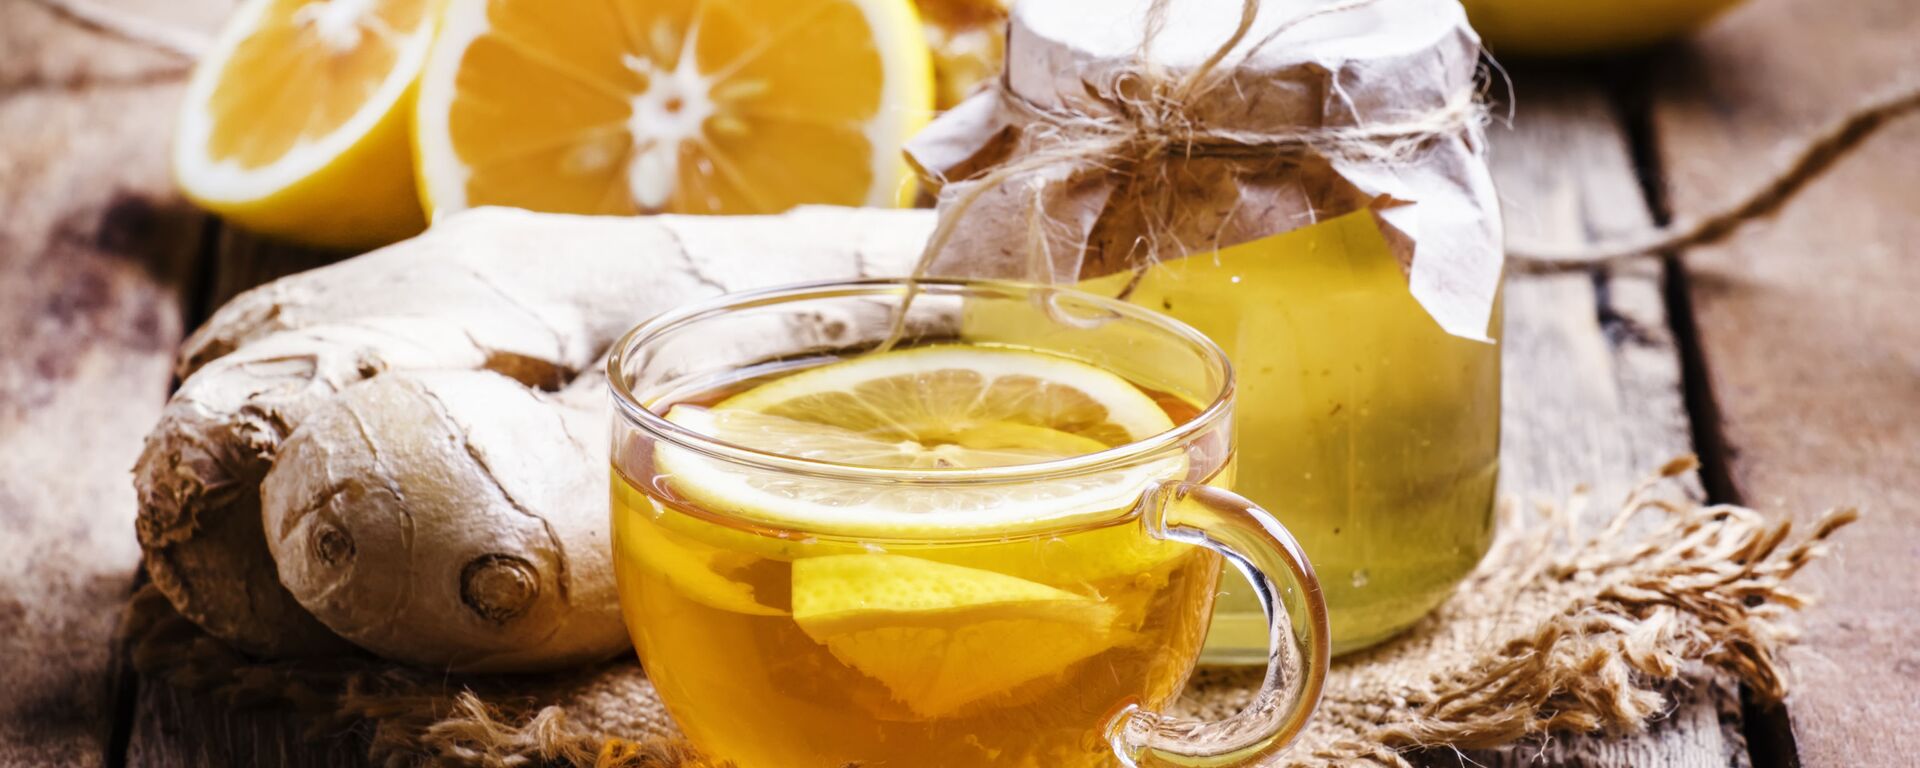 الشاي الأسود مع الليمون والعسل - سبوتنيك عربي, 1920, 03.06.2021